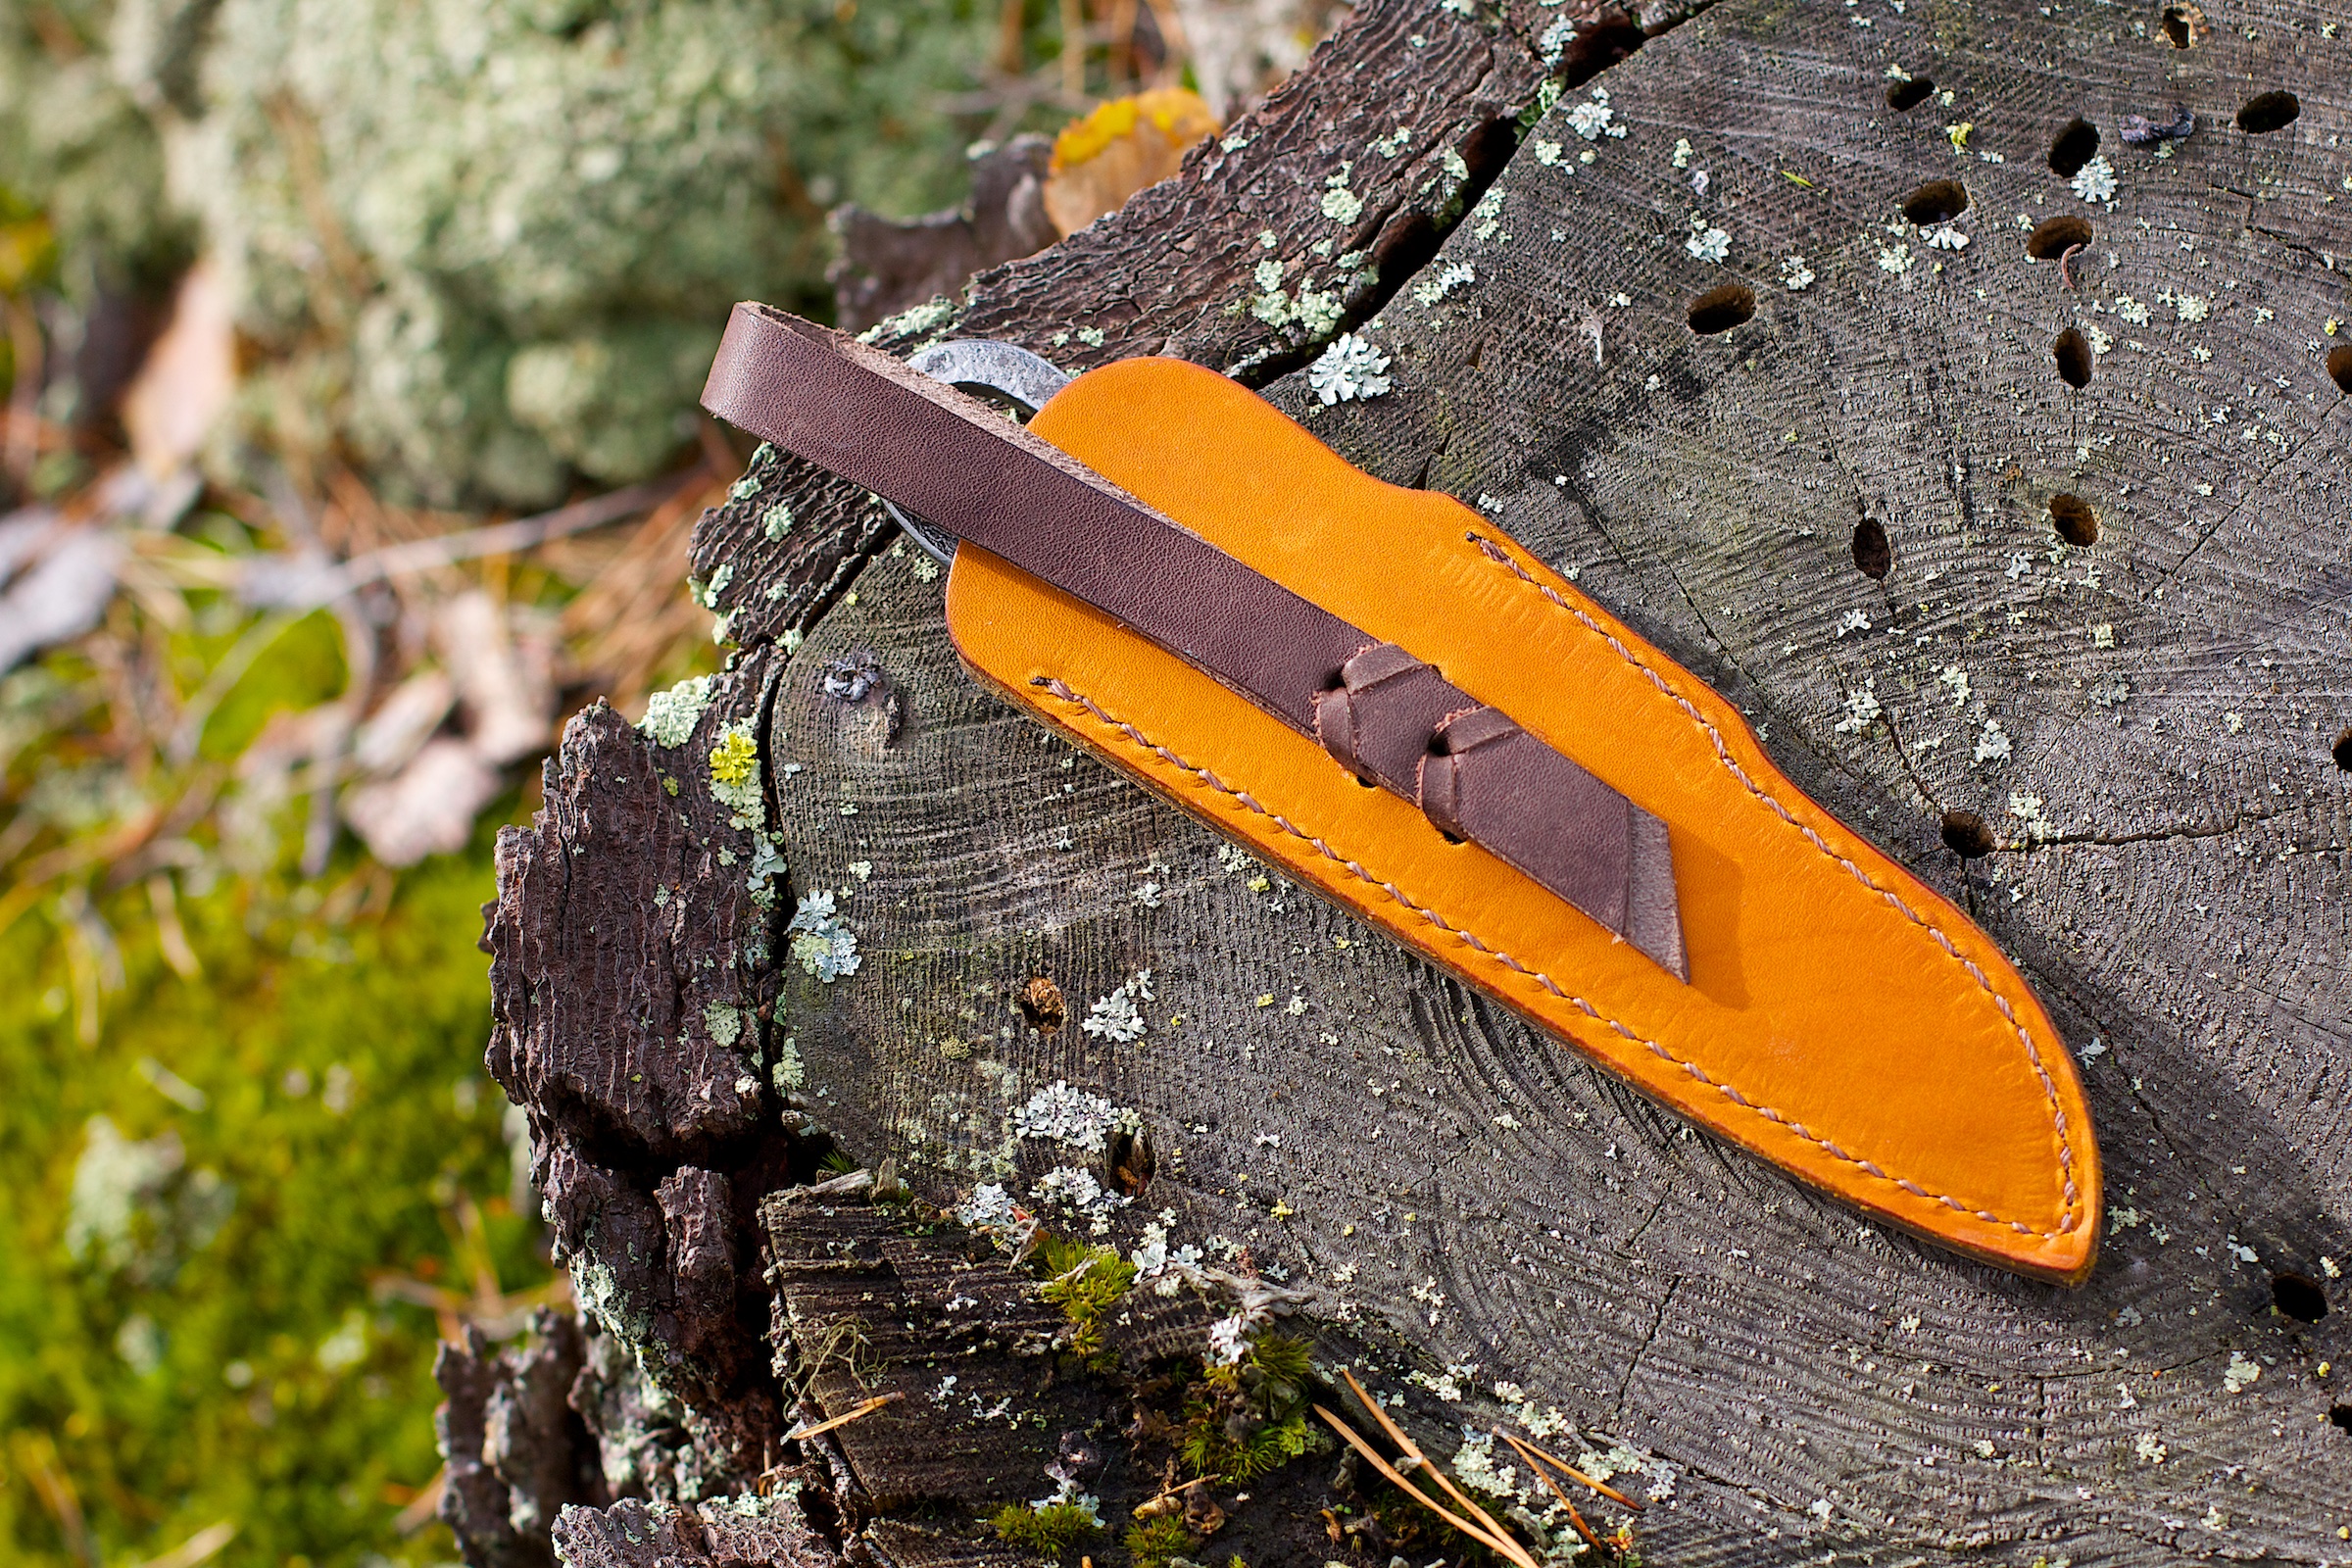 нож №2.1 кожаные ножны для ношения на ремне - Купить огниво: кресало .